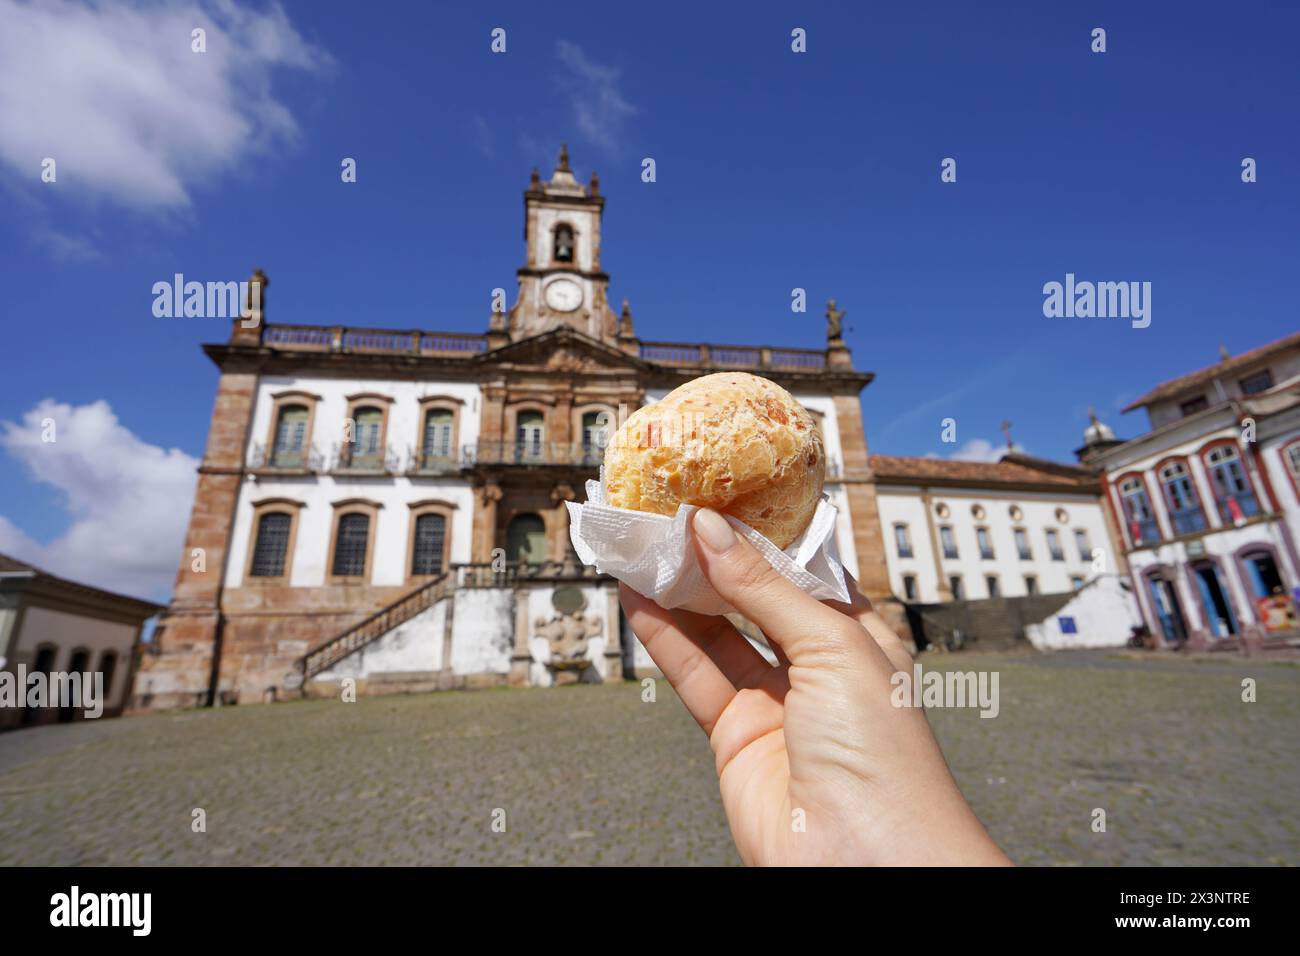 Pao de queijo (panino di formaggio brasiliano) in Piazza Tiradentes, Ouro Preto, Minas Gerais, Brasile, la città è patrimonio dell'umanità dell'UNESCO Foto Stock